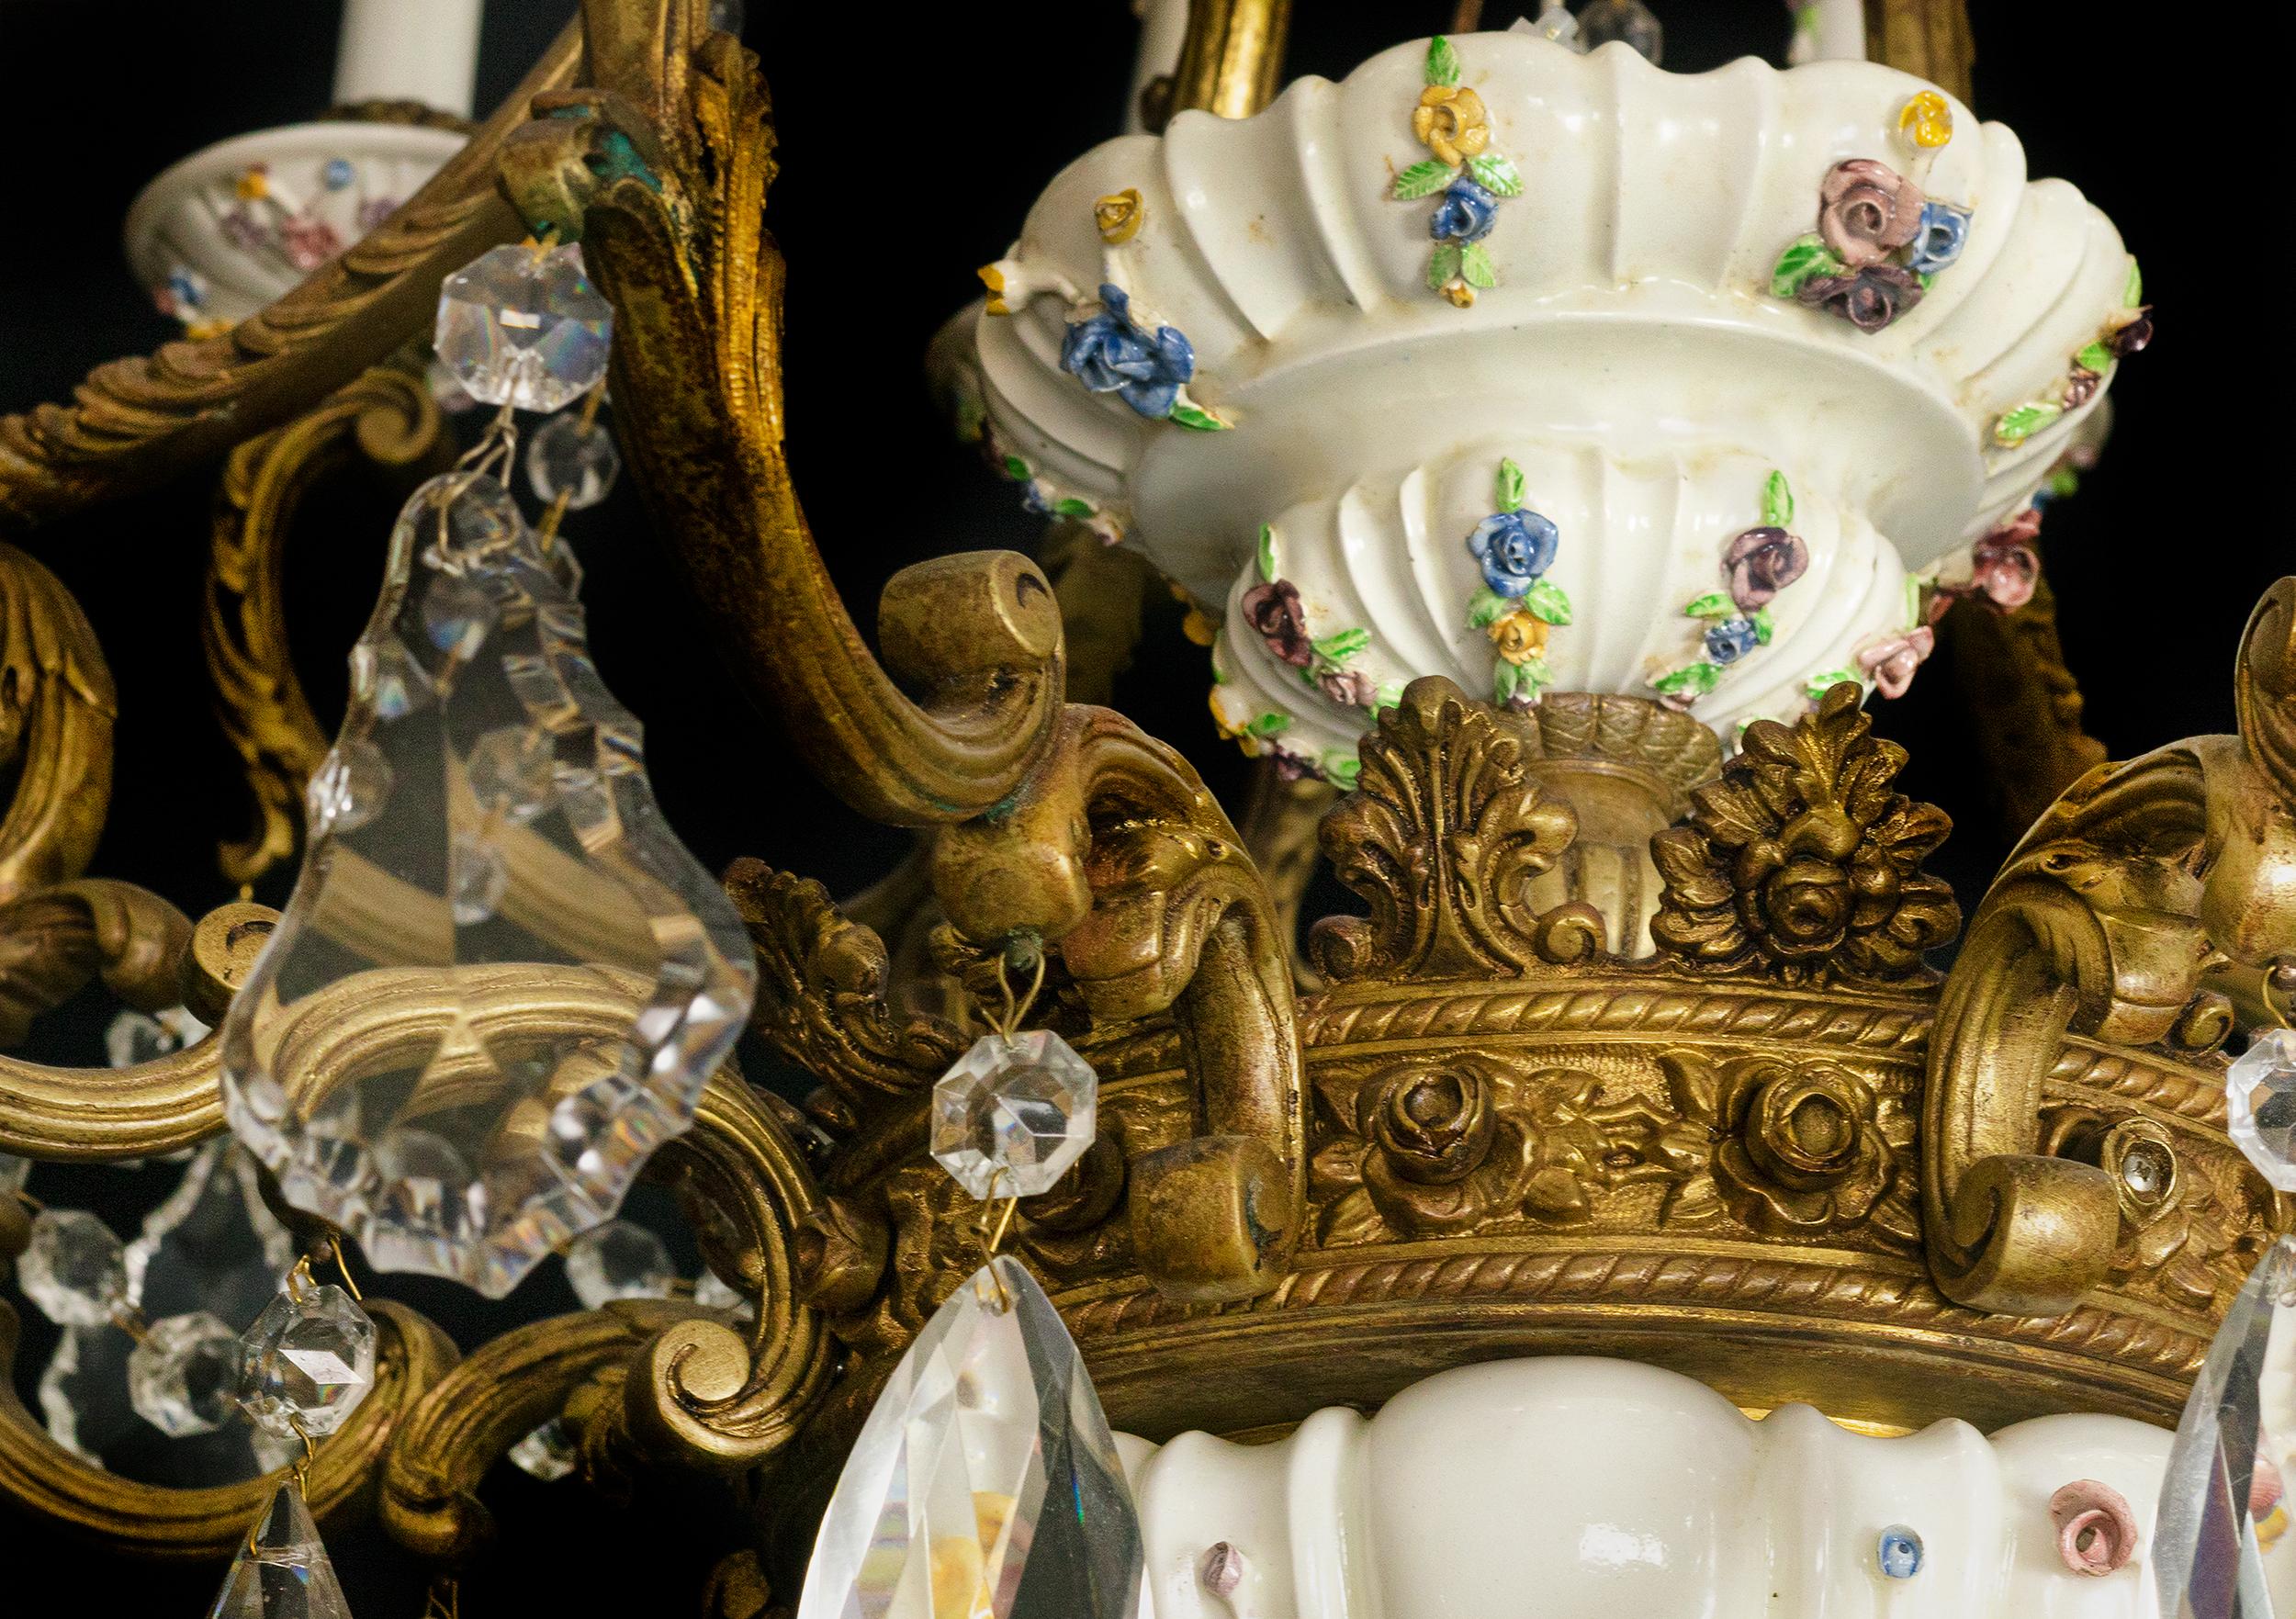 Ein großer, mit Blumen und Pflanzen verzierter Kronleuchter aus dem 19. Jahrhundert mit 16 goldenen Bronzearmen und hängenden Glasornamenten. 
Maissener Porzellan und goldfarbene Arme.

Die Elektroinstallation wurde kürzlich überprüft und